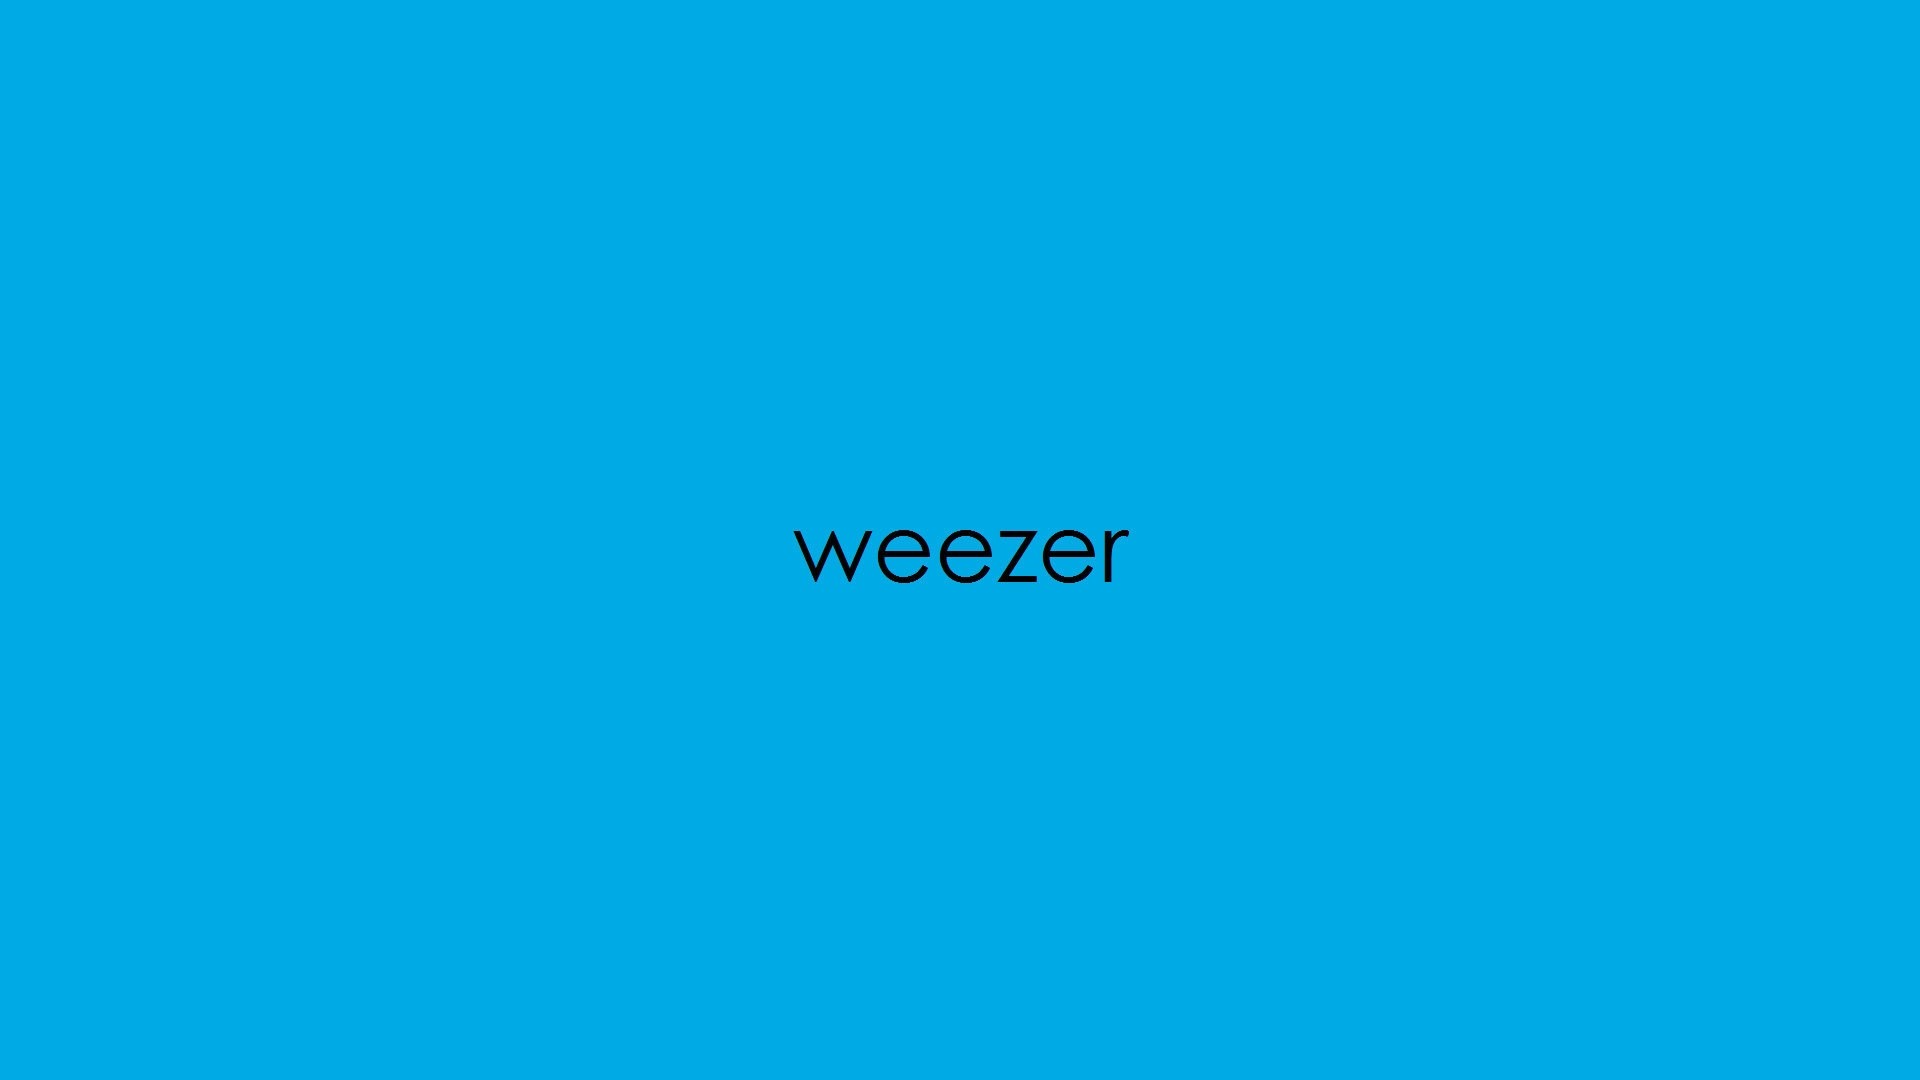 Weezer computer wallpaper